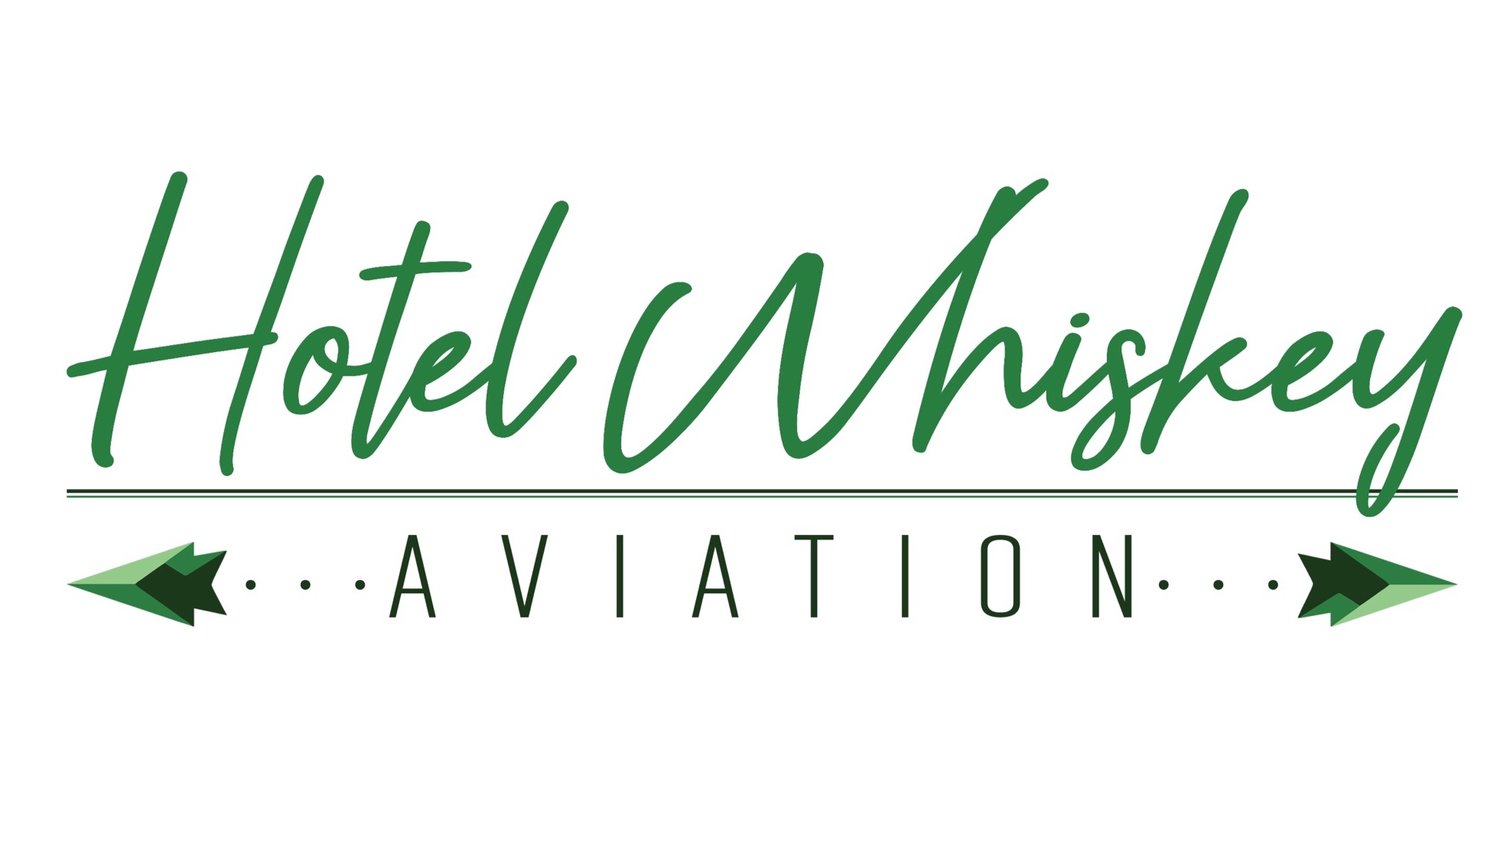 Hotel Whiskey Aviation